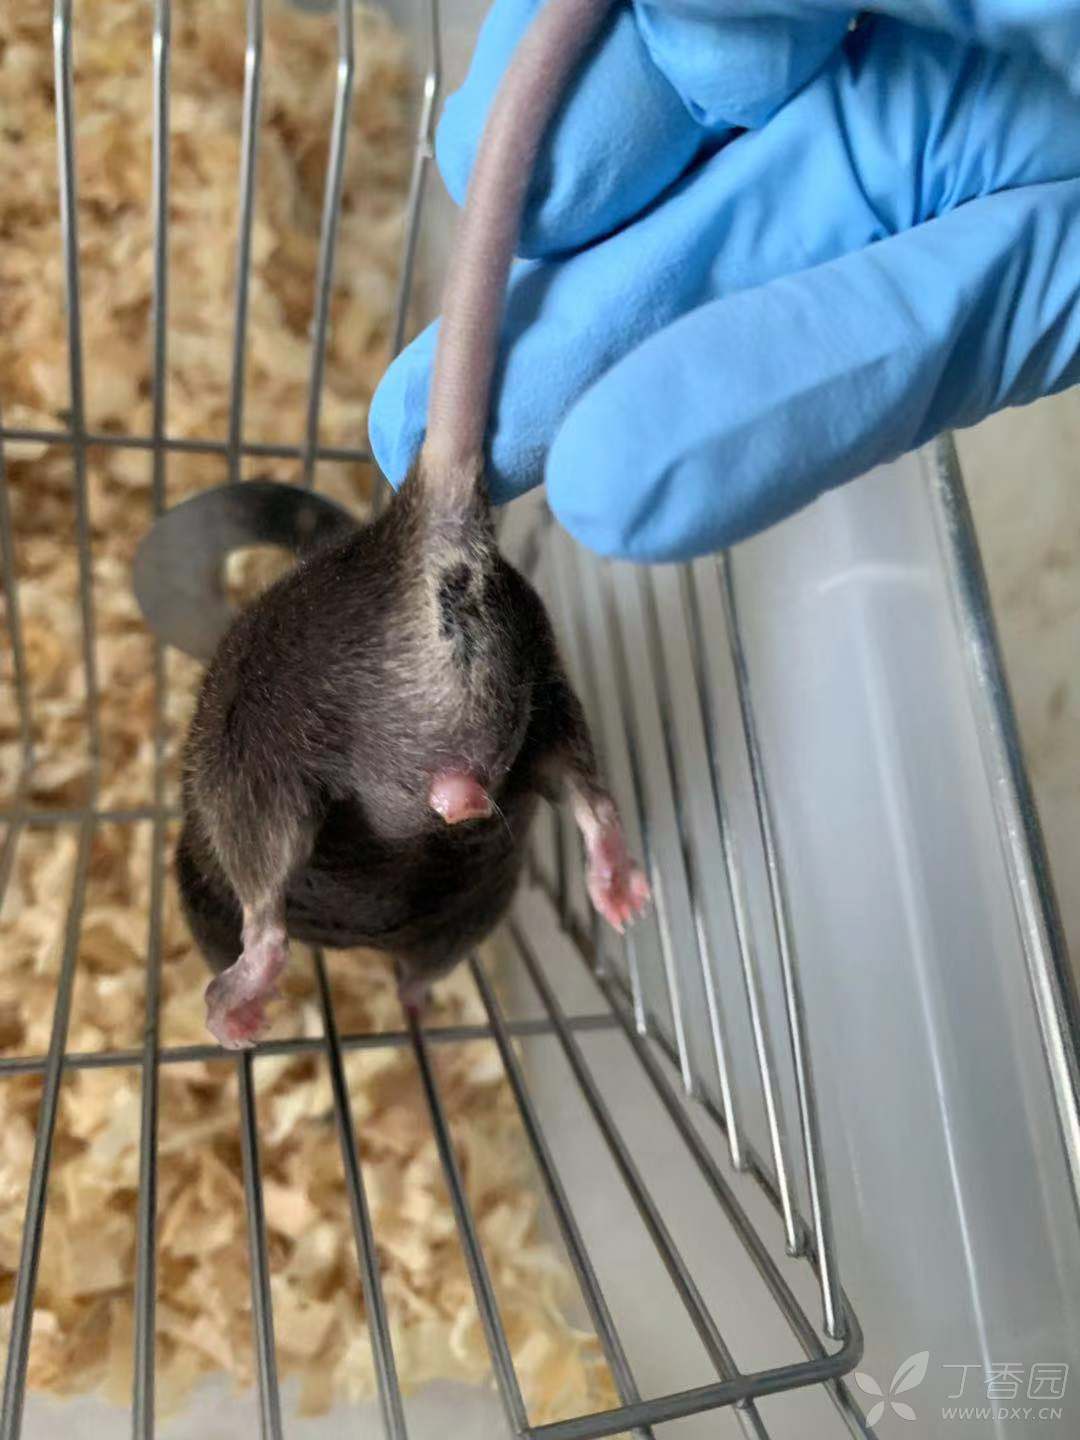 小鼠生殖器肿胀 成年c57bl 6n雄性小鼠生殖器肿胀的原因 实验动物与组织学技术讨论版 丁香园论坛